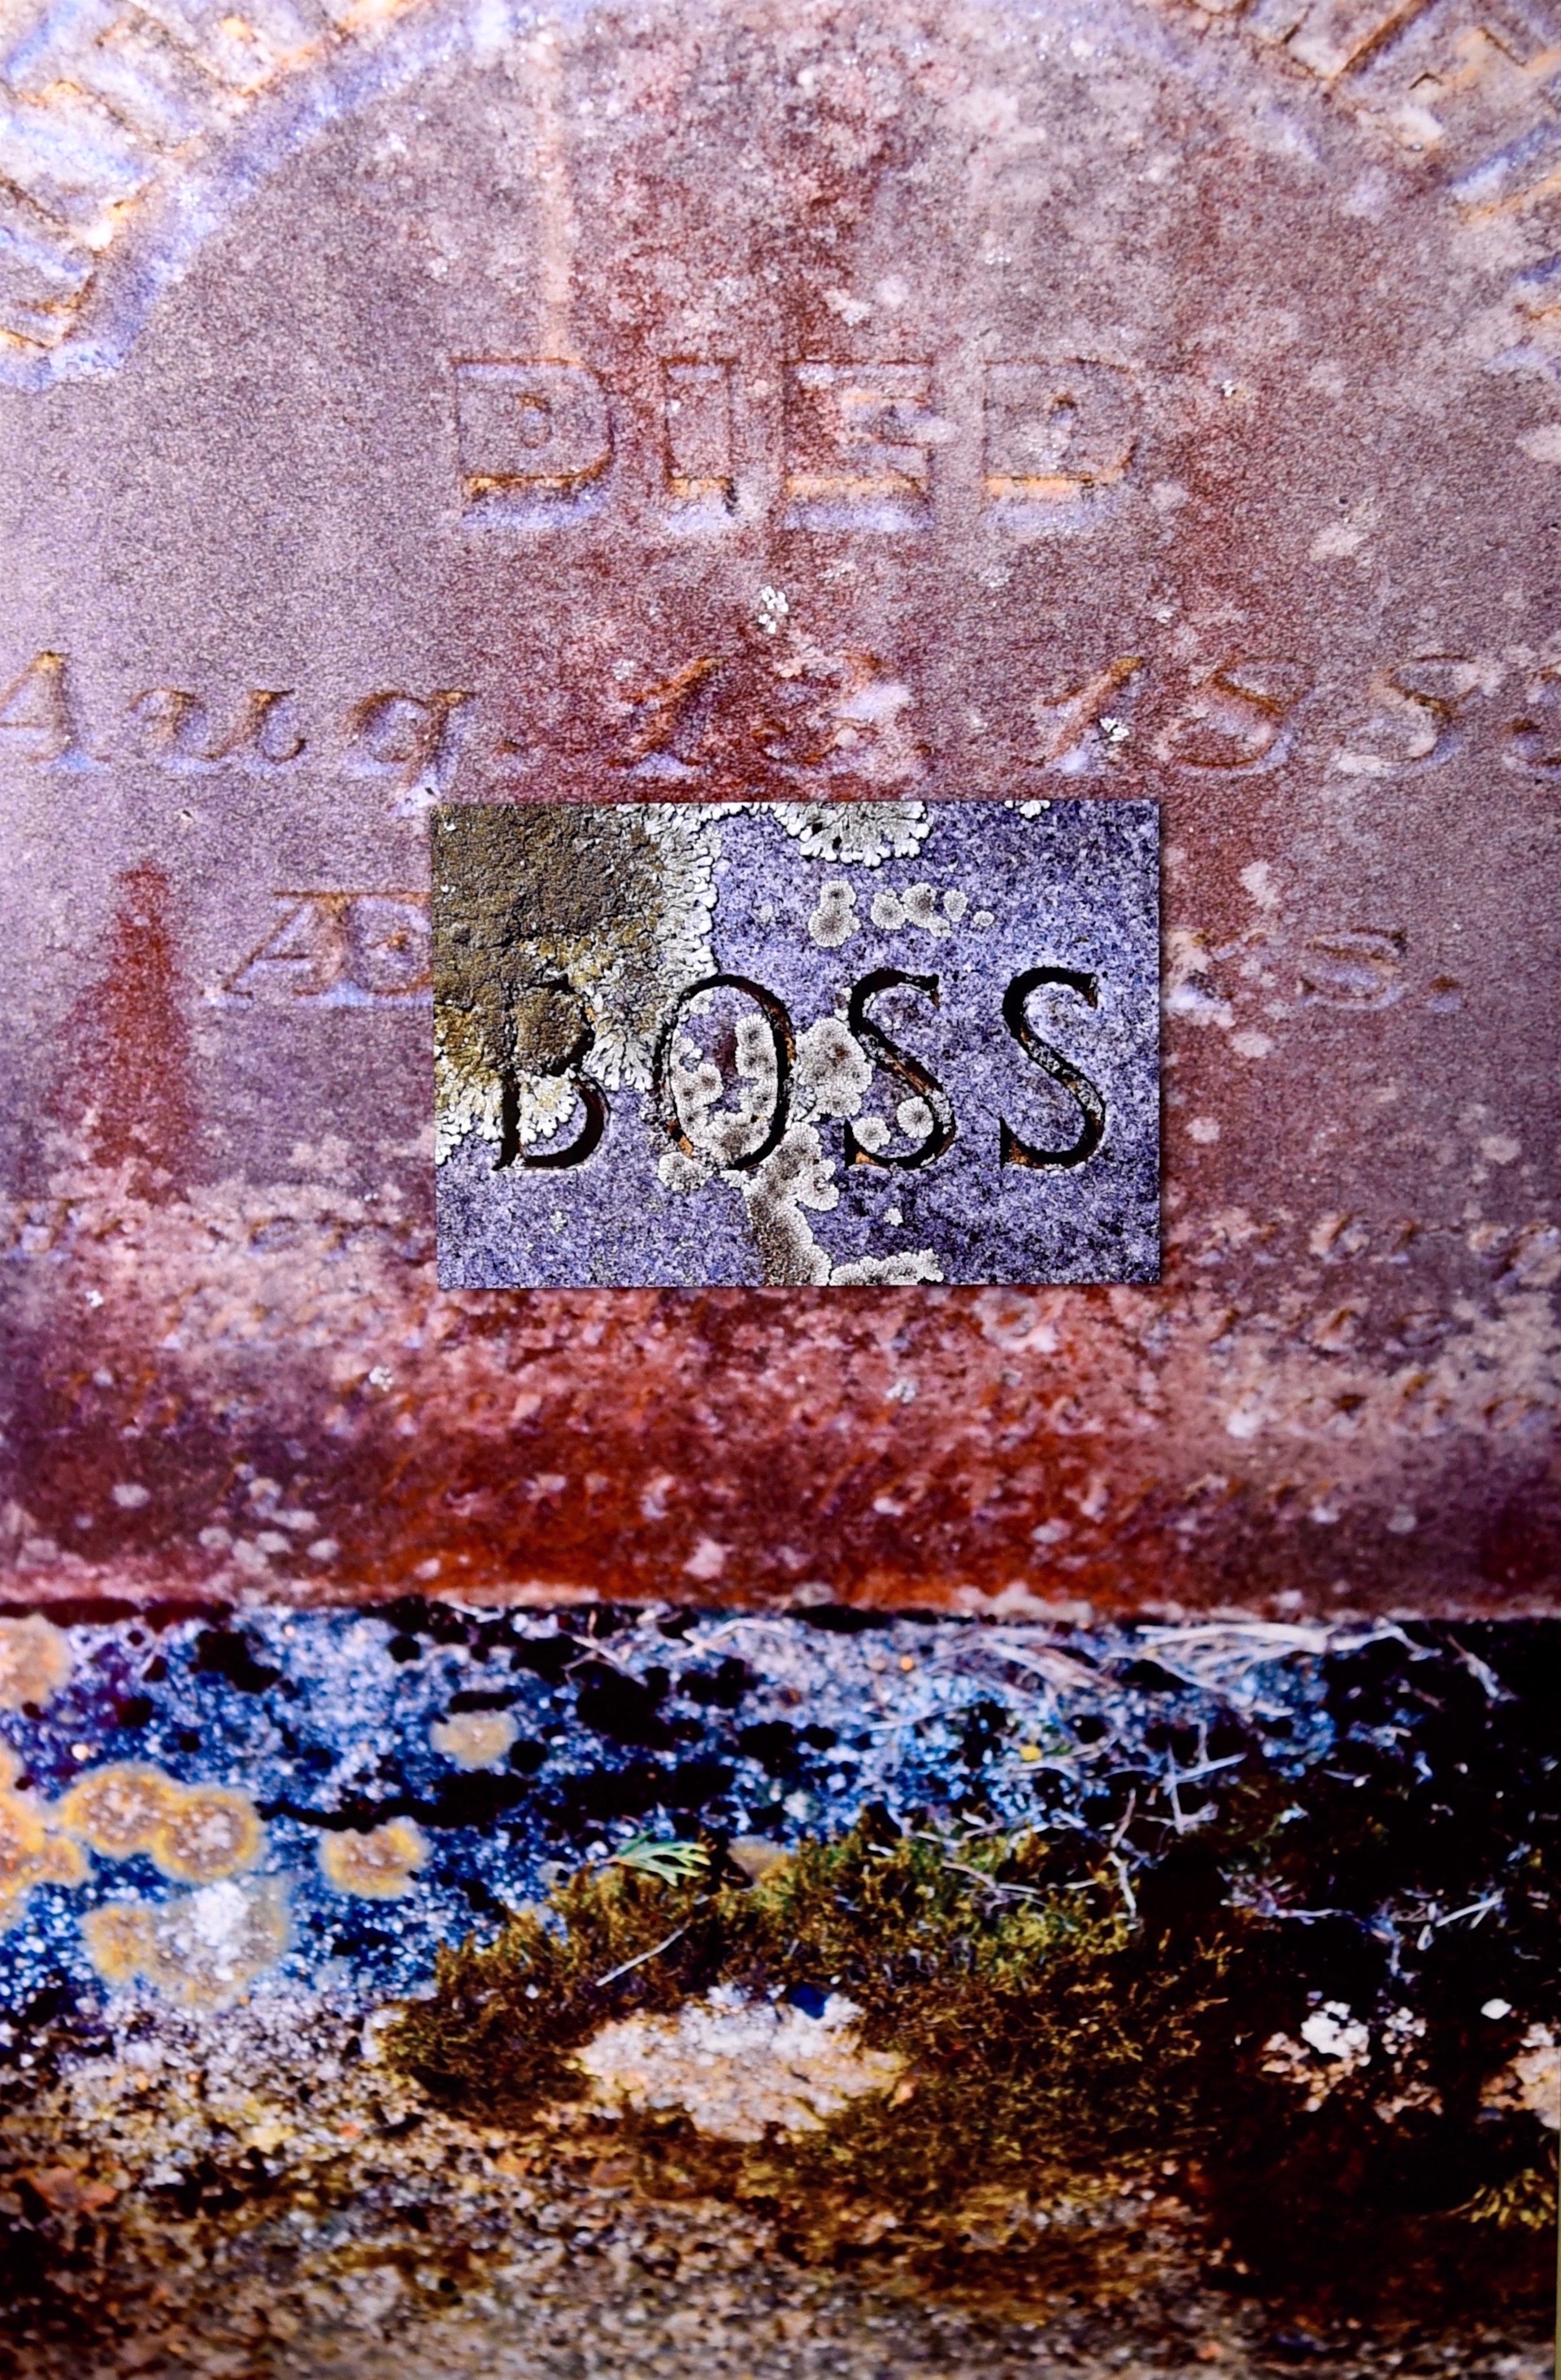 Boss by Kat O'Neill